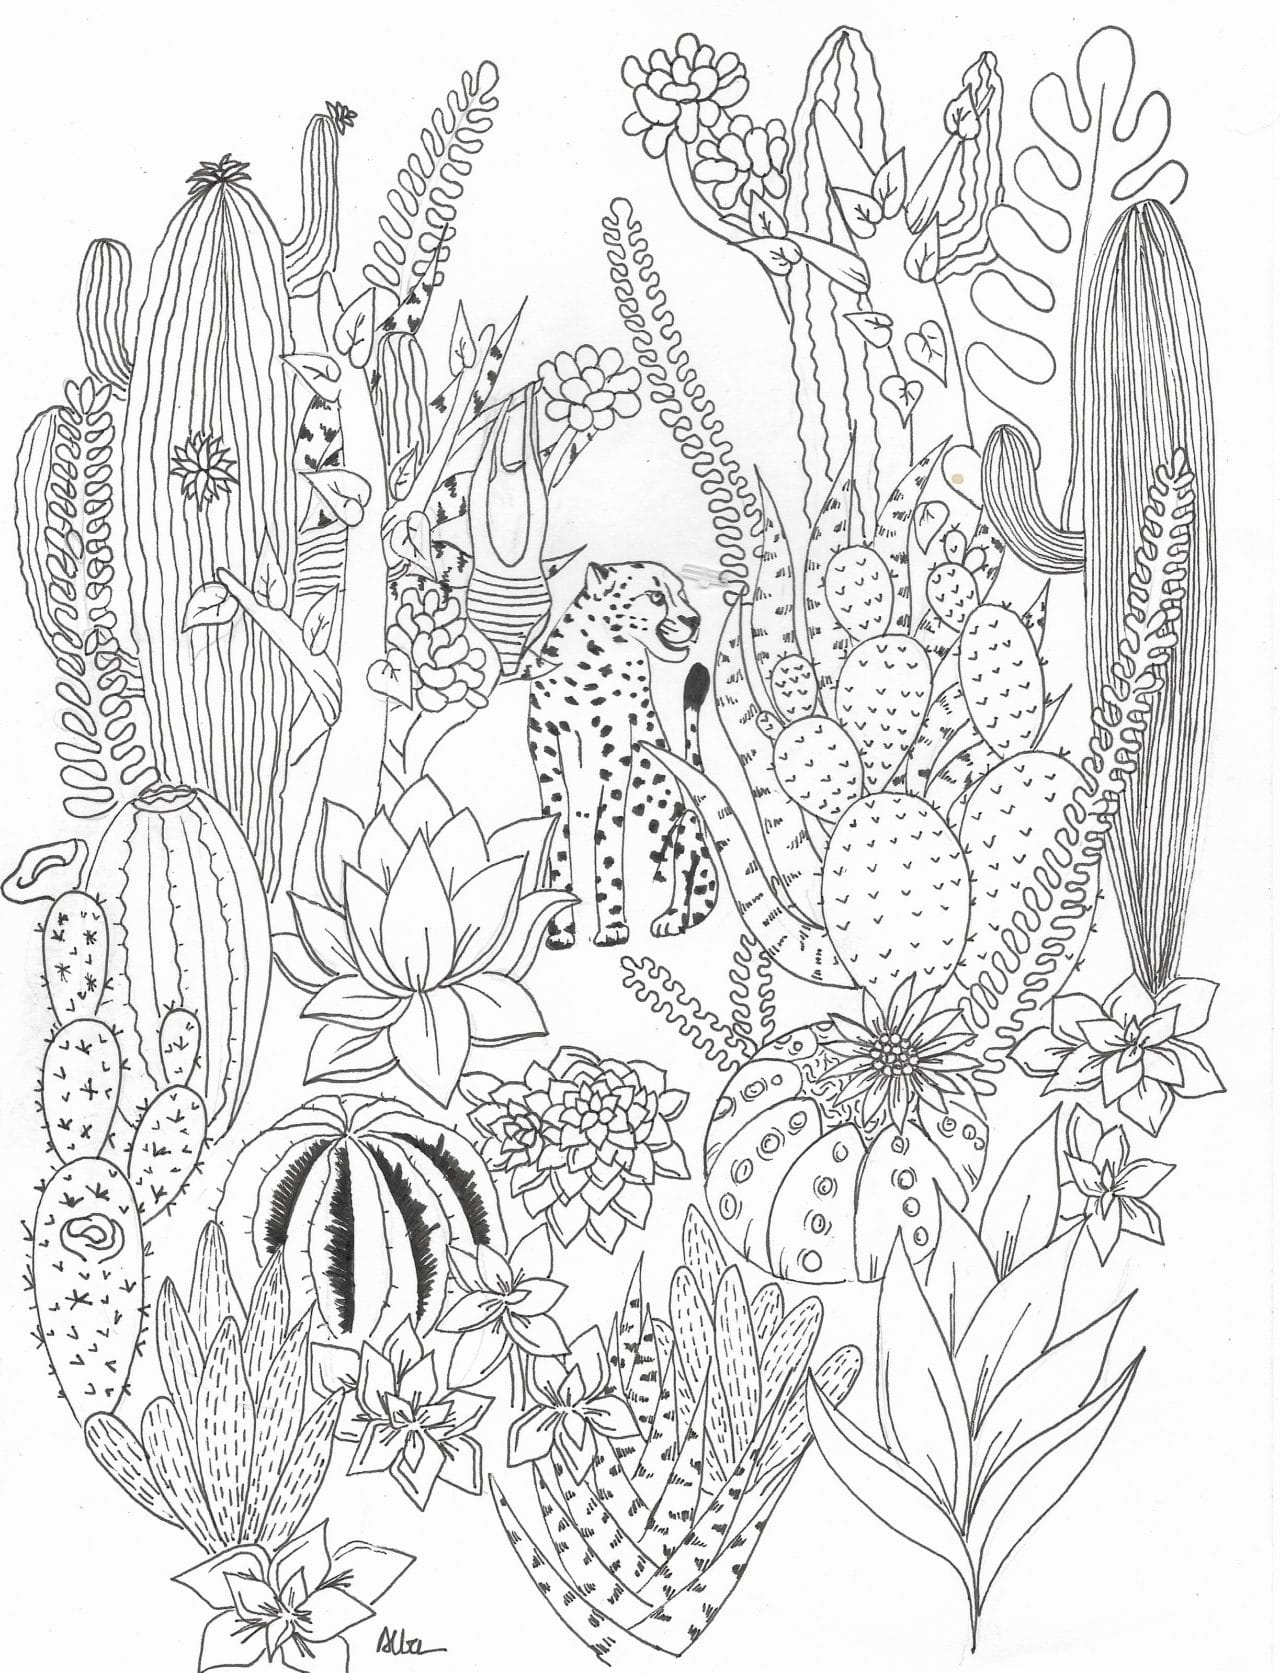 Coloriage Cactus - Alba - Salvaje concernant Coloriage Cactus 